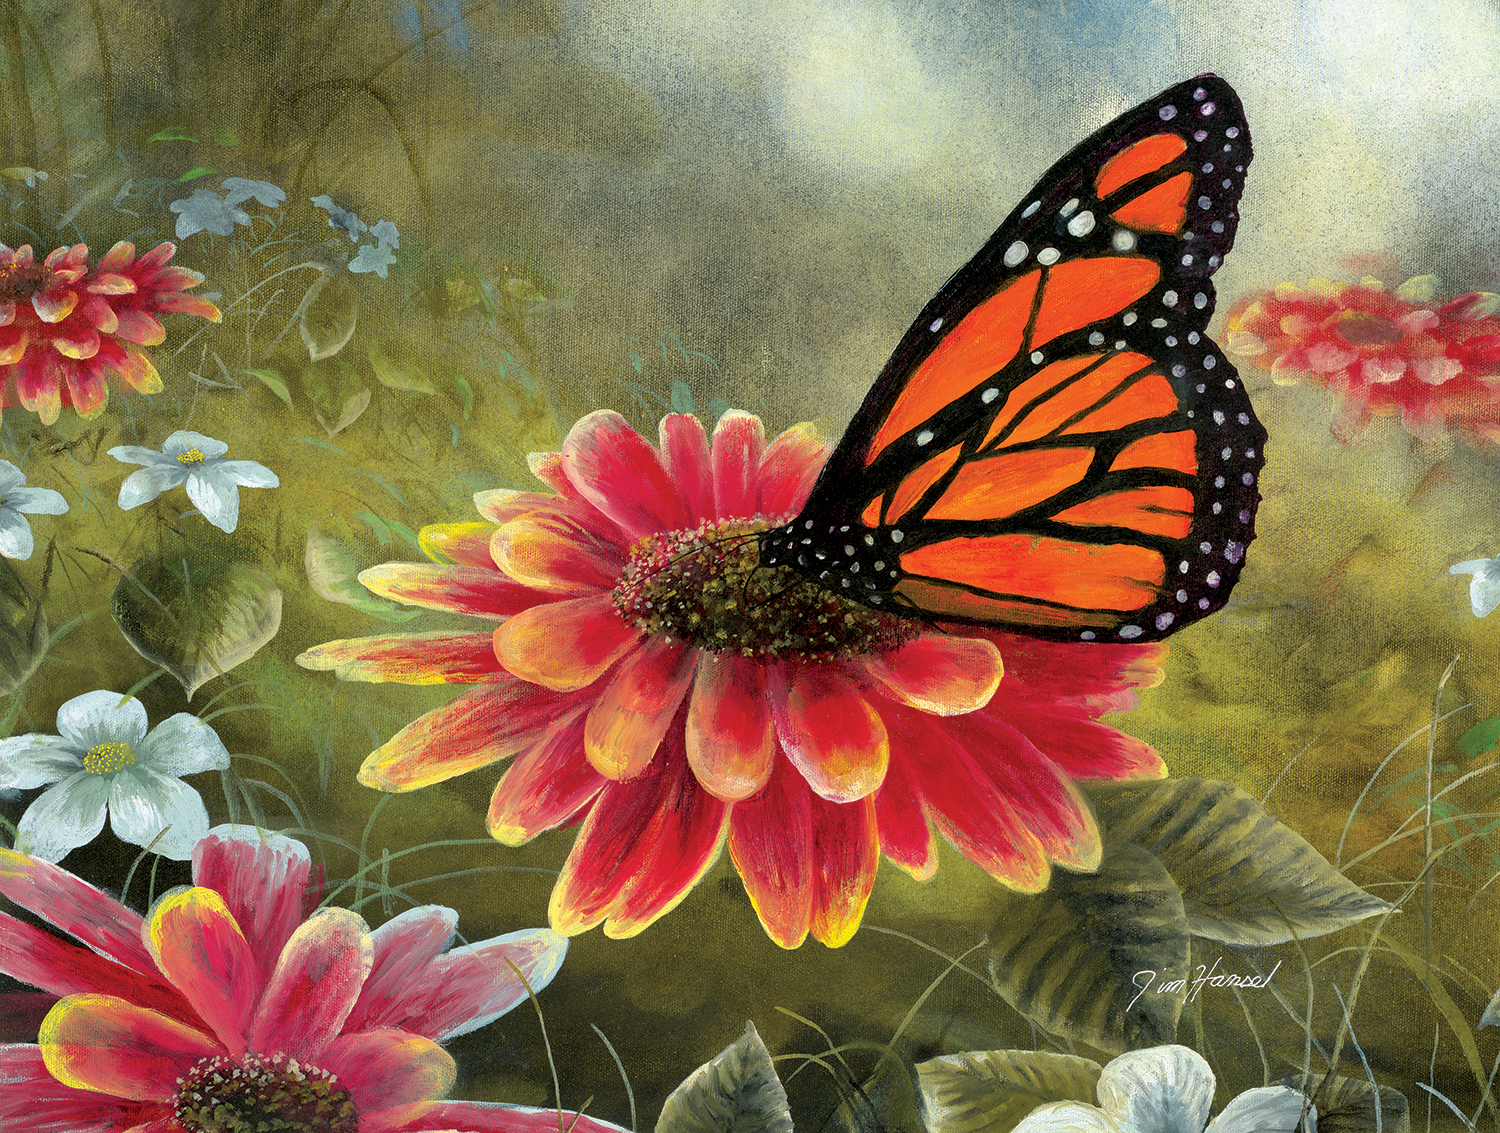 Monarch Butterfly 500